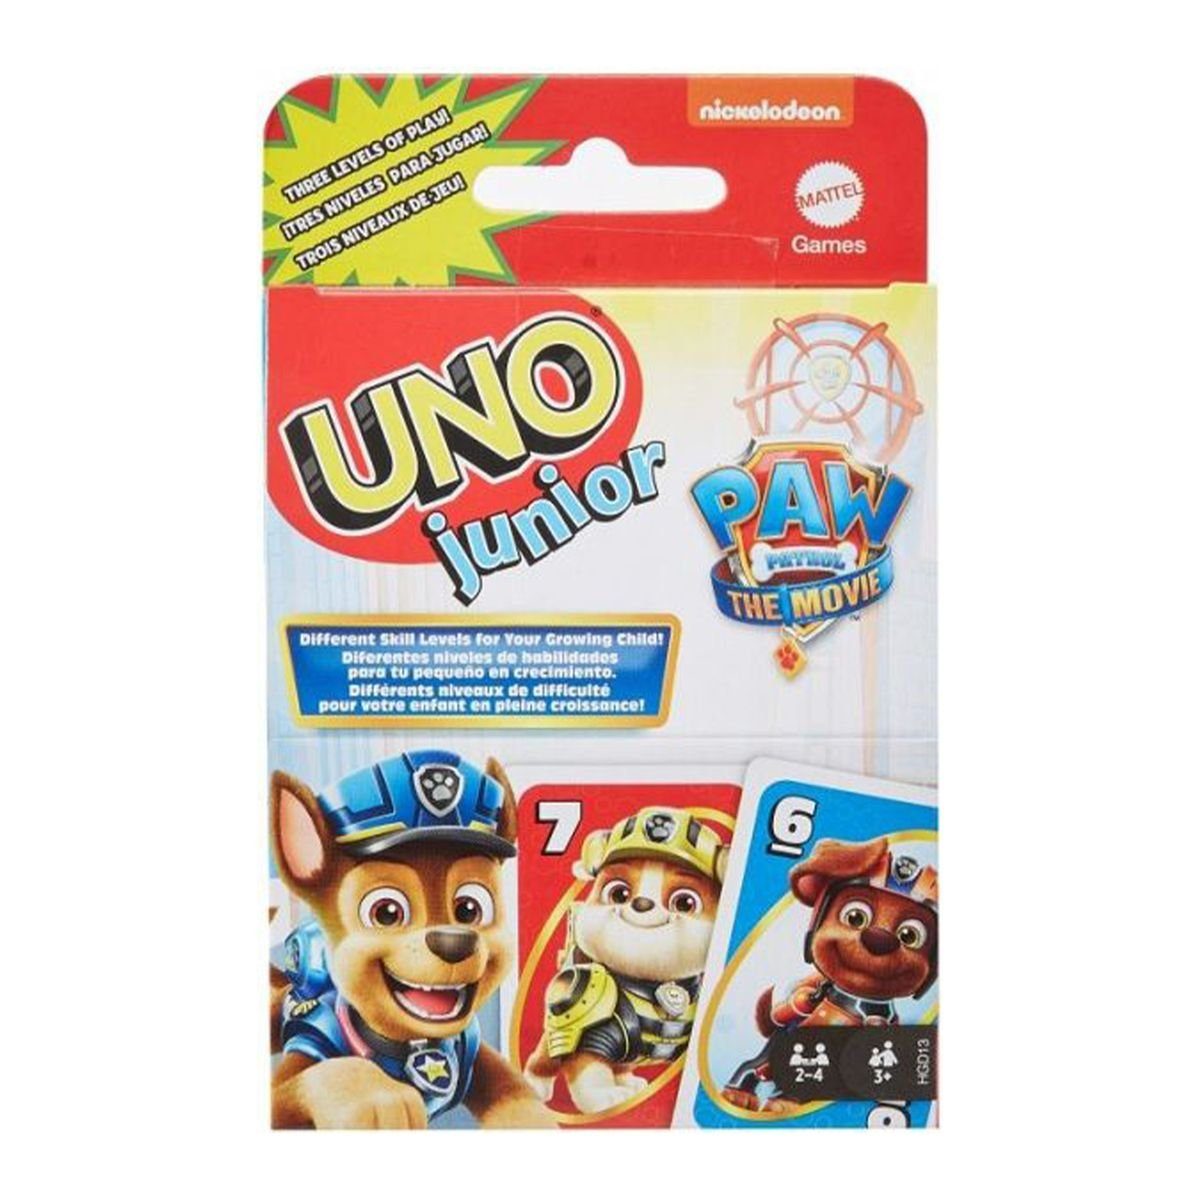 Mattel® Spiel, Mattel HGD13 - Paw Patrol - Kartenspiel, UNO Junior